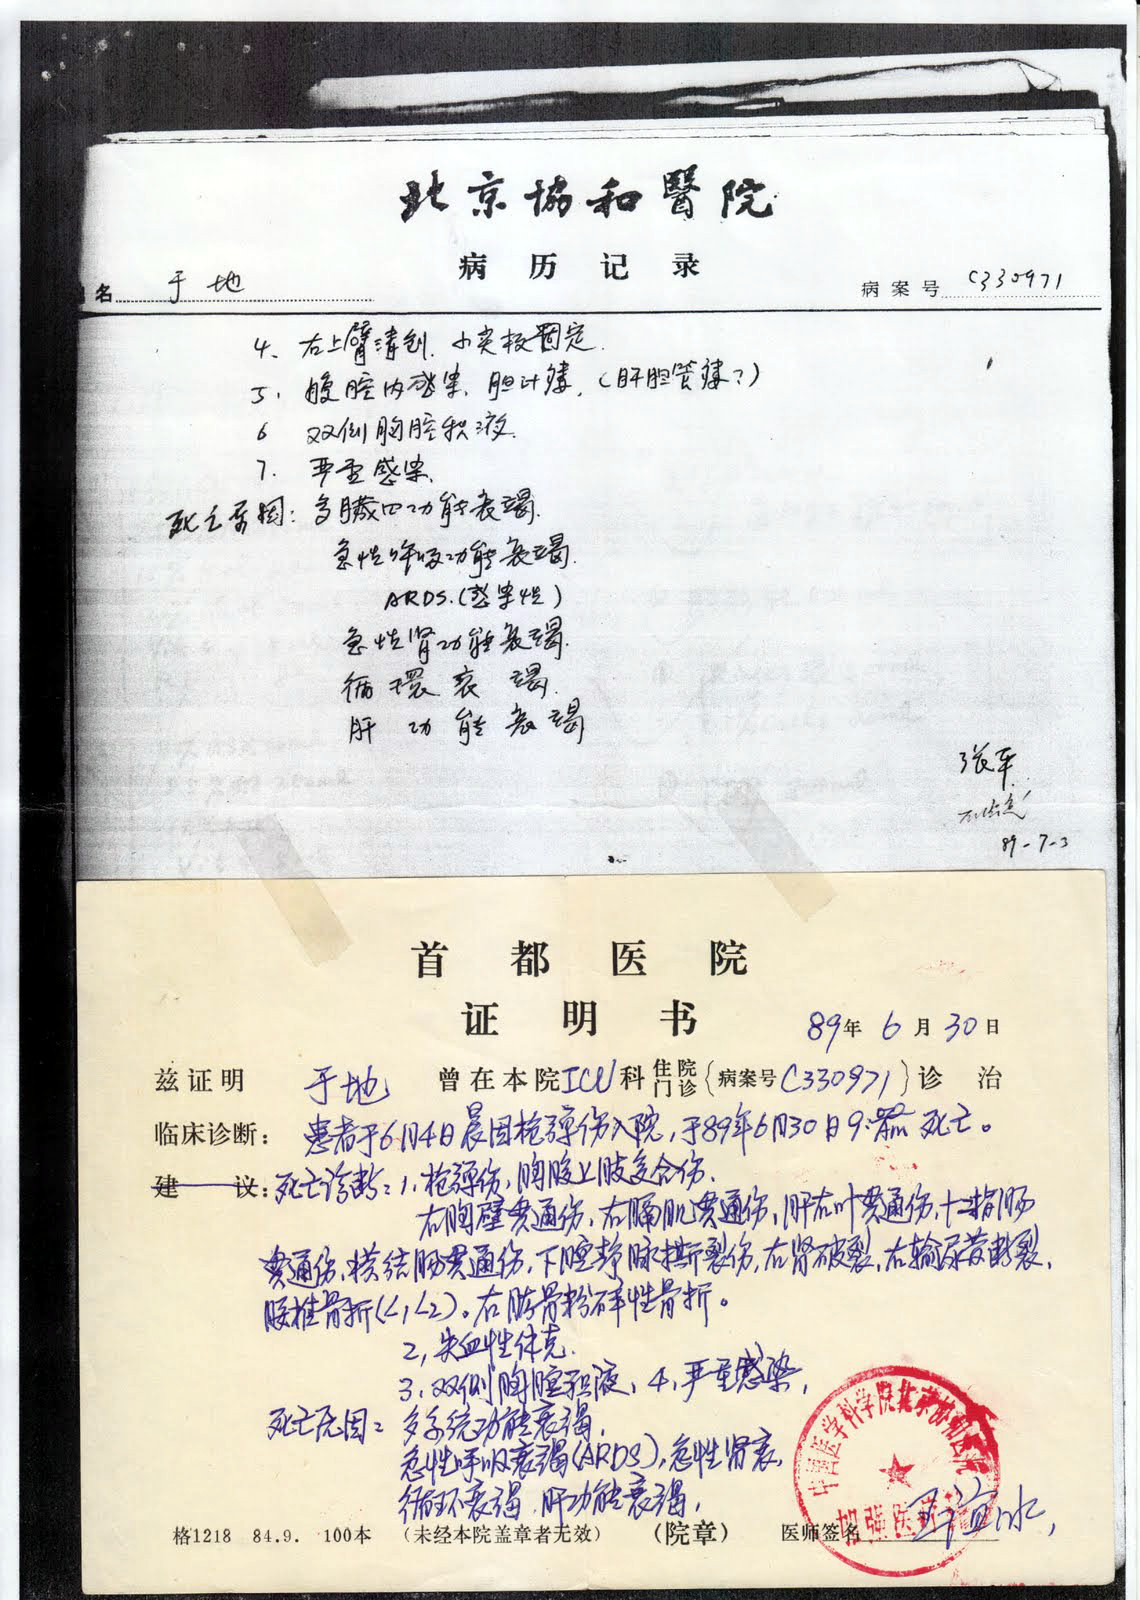 北京協和醫院的于地病歷記錄和首都醫院發的死亡證明書影印件